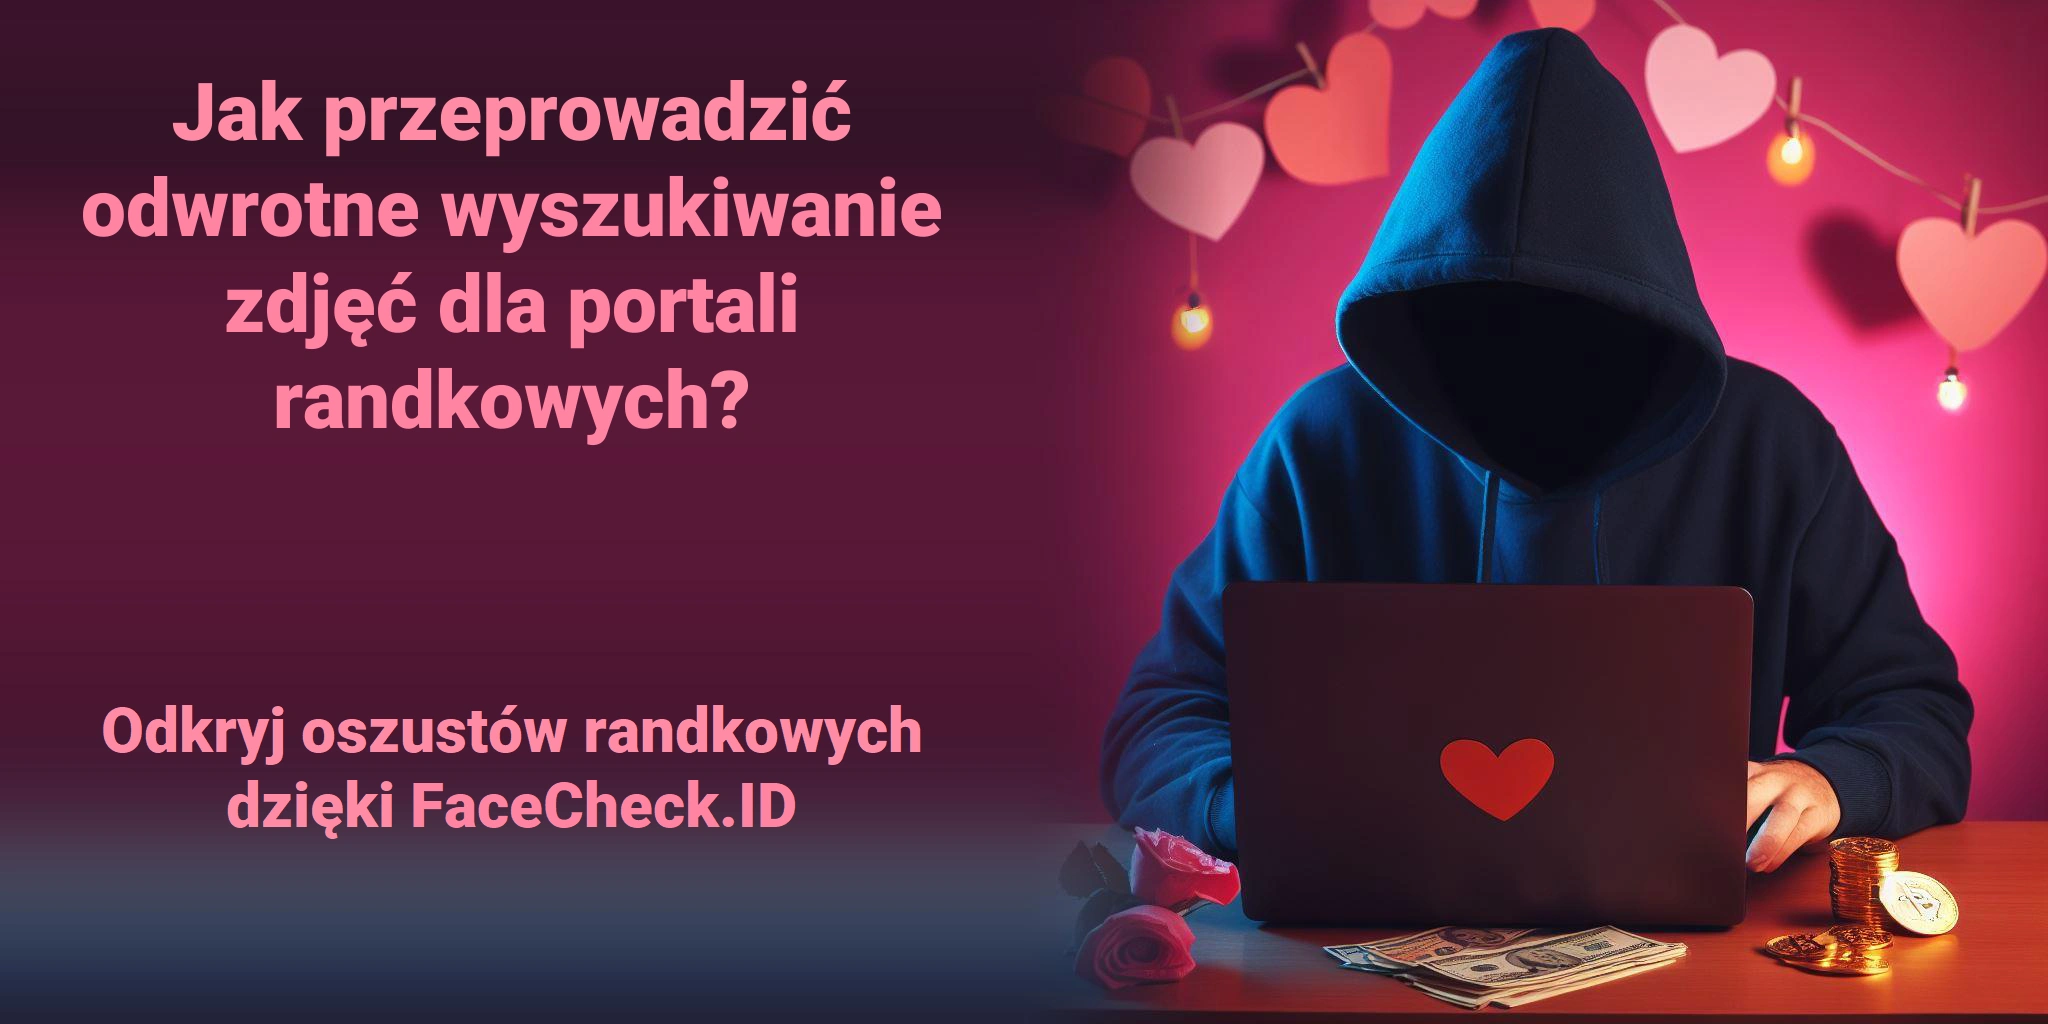 Jak przeprowadzić odwrotne wyszukiwanie zdjęć dla portali randkowych? Odkryj oszustów randkowych dzięki FaceCheck.ID